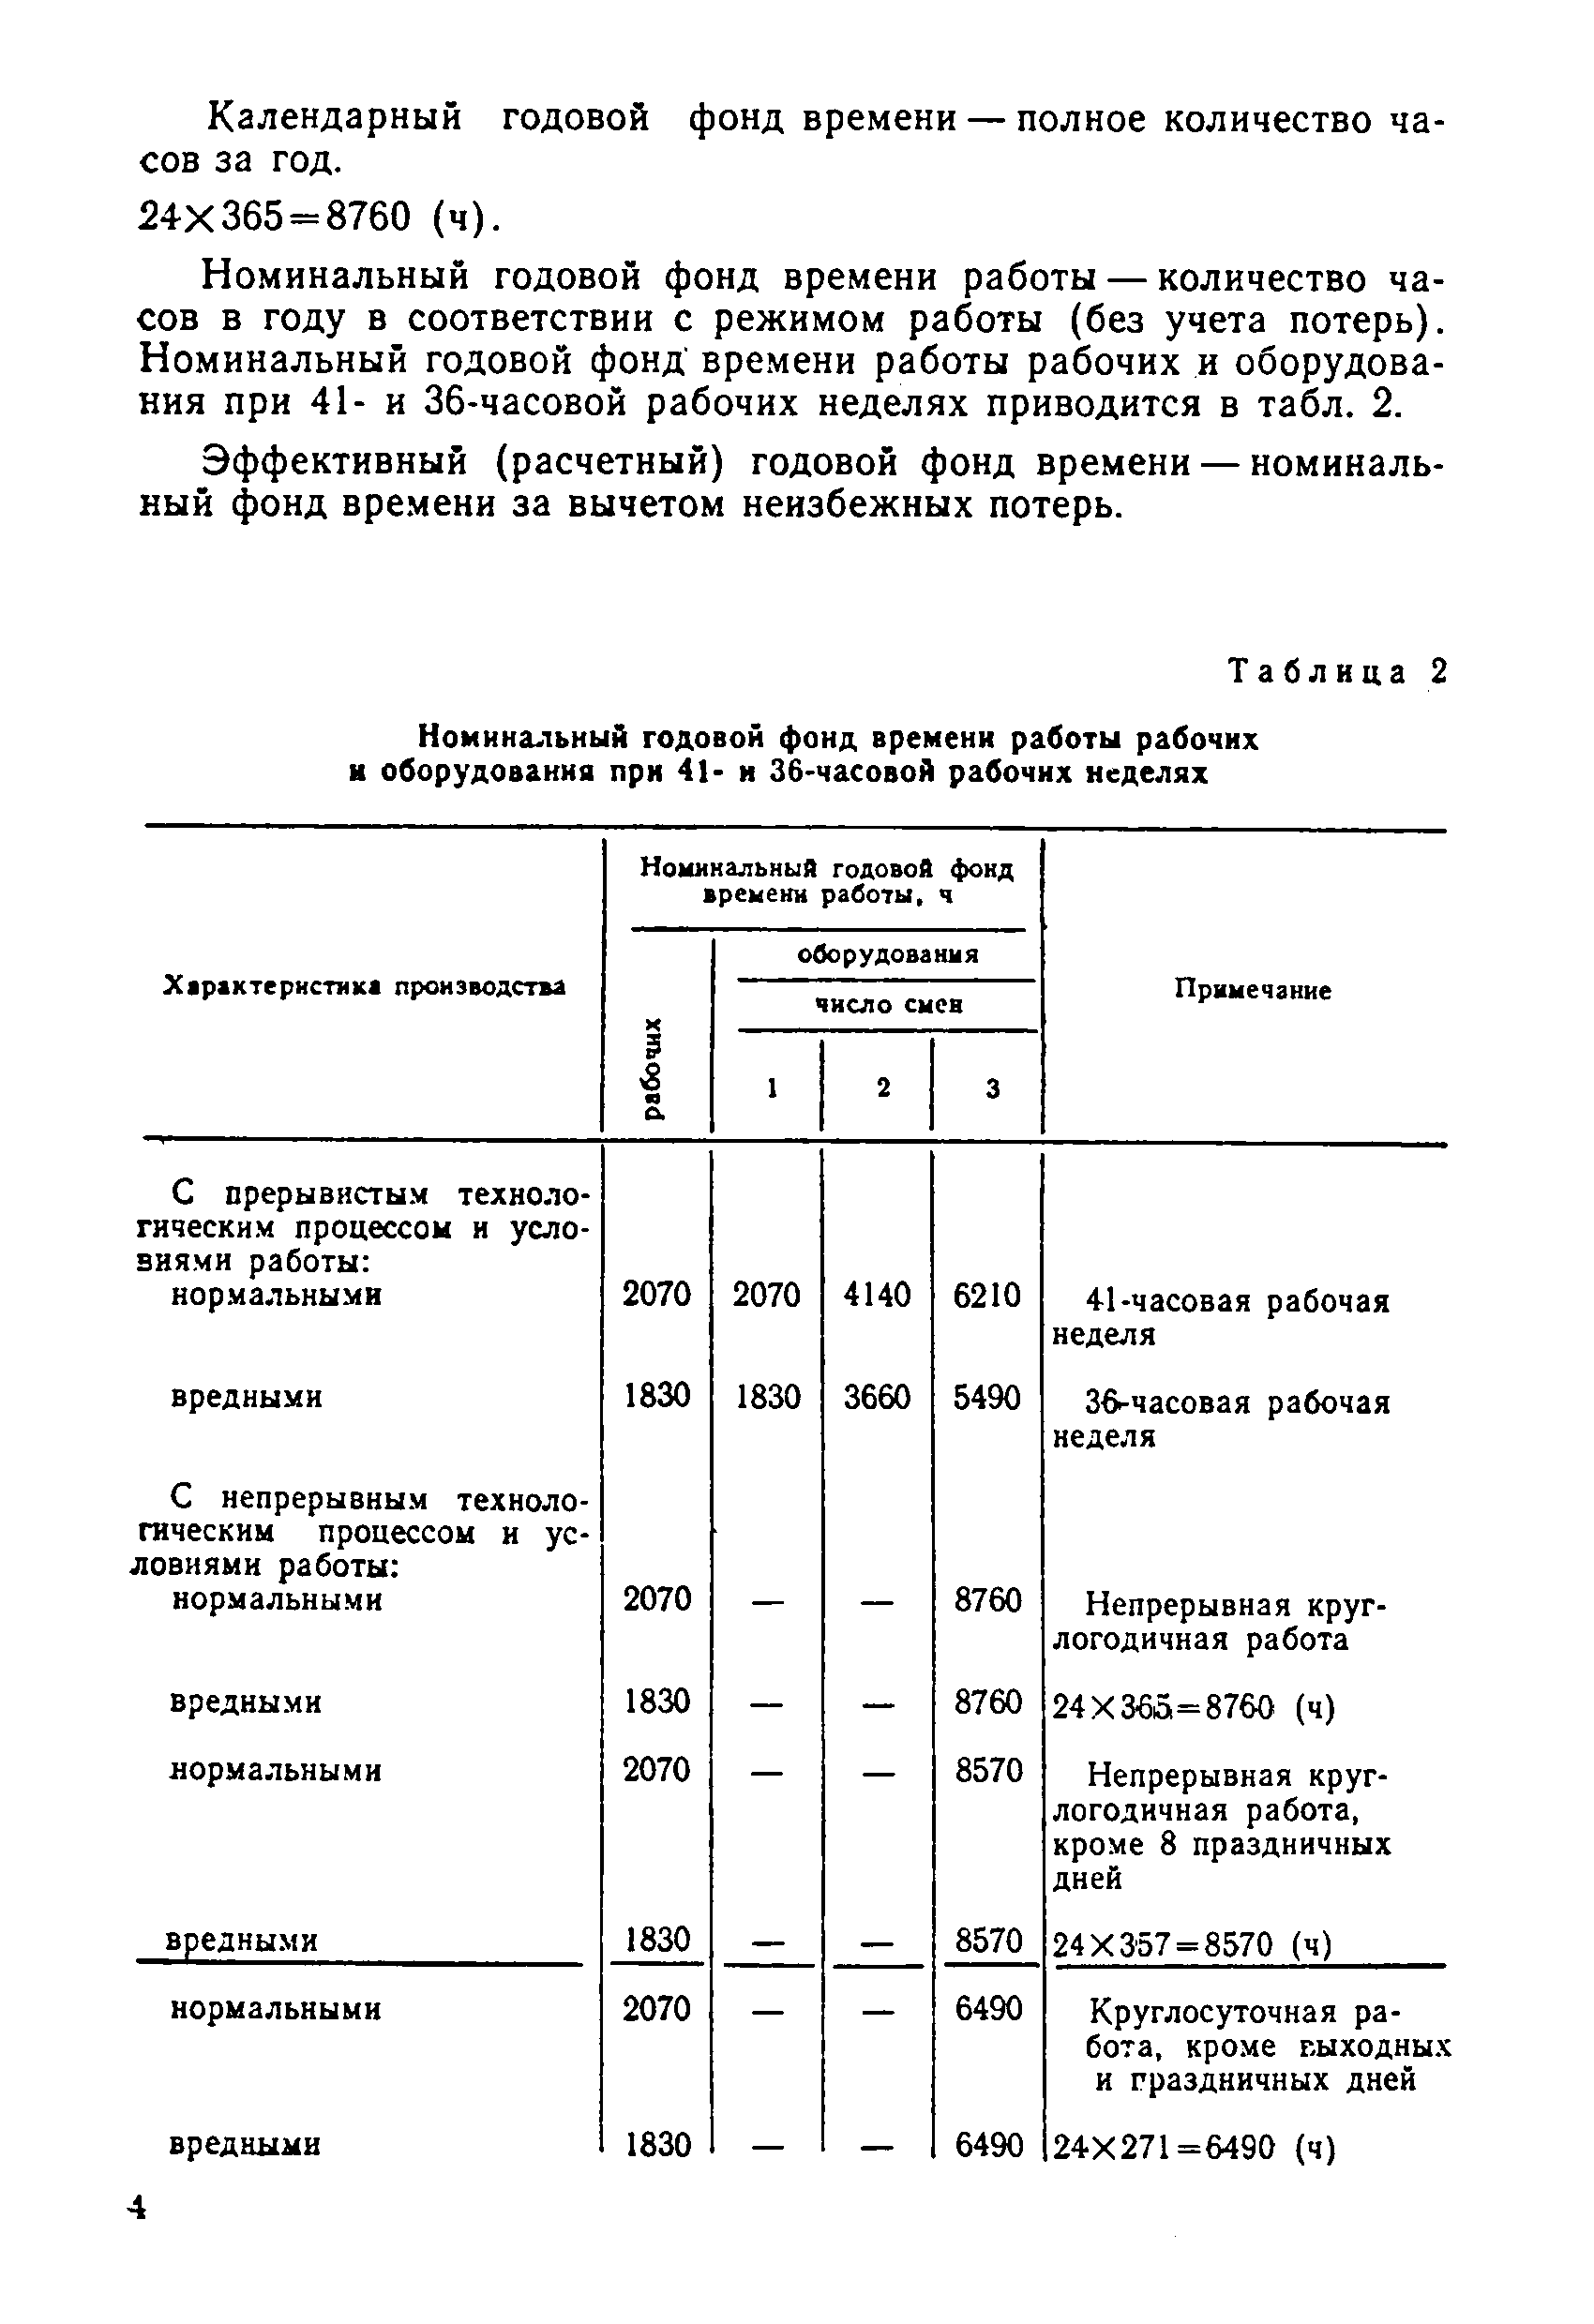 ОНТП 15-86/Минстанкопром